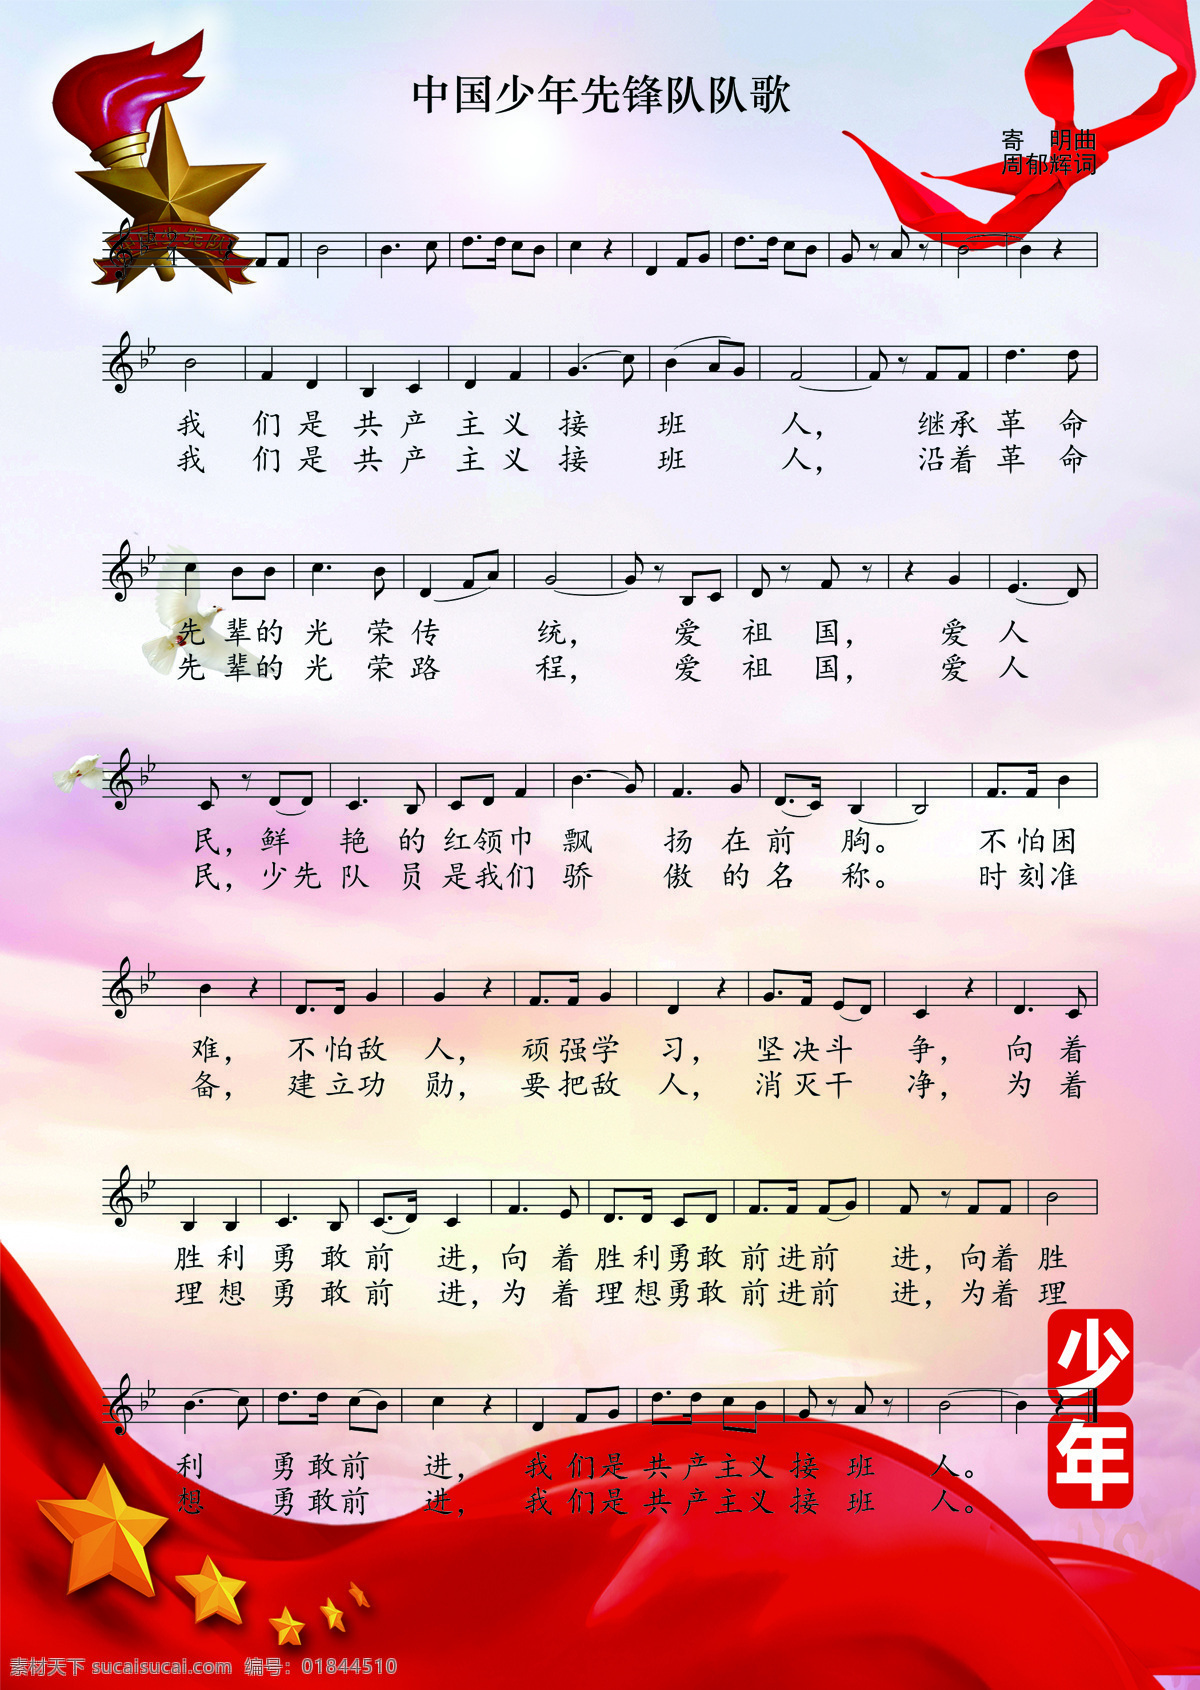 中国少年先锋队 队歌 中国 少先队 五线谱 共享 文化艺术 舞蹈音乐